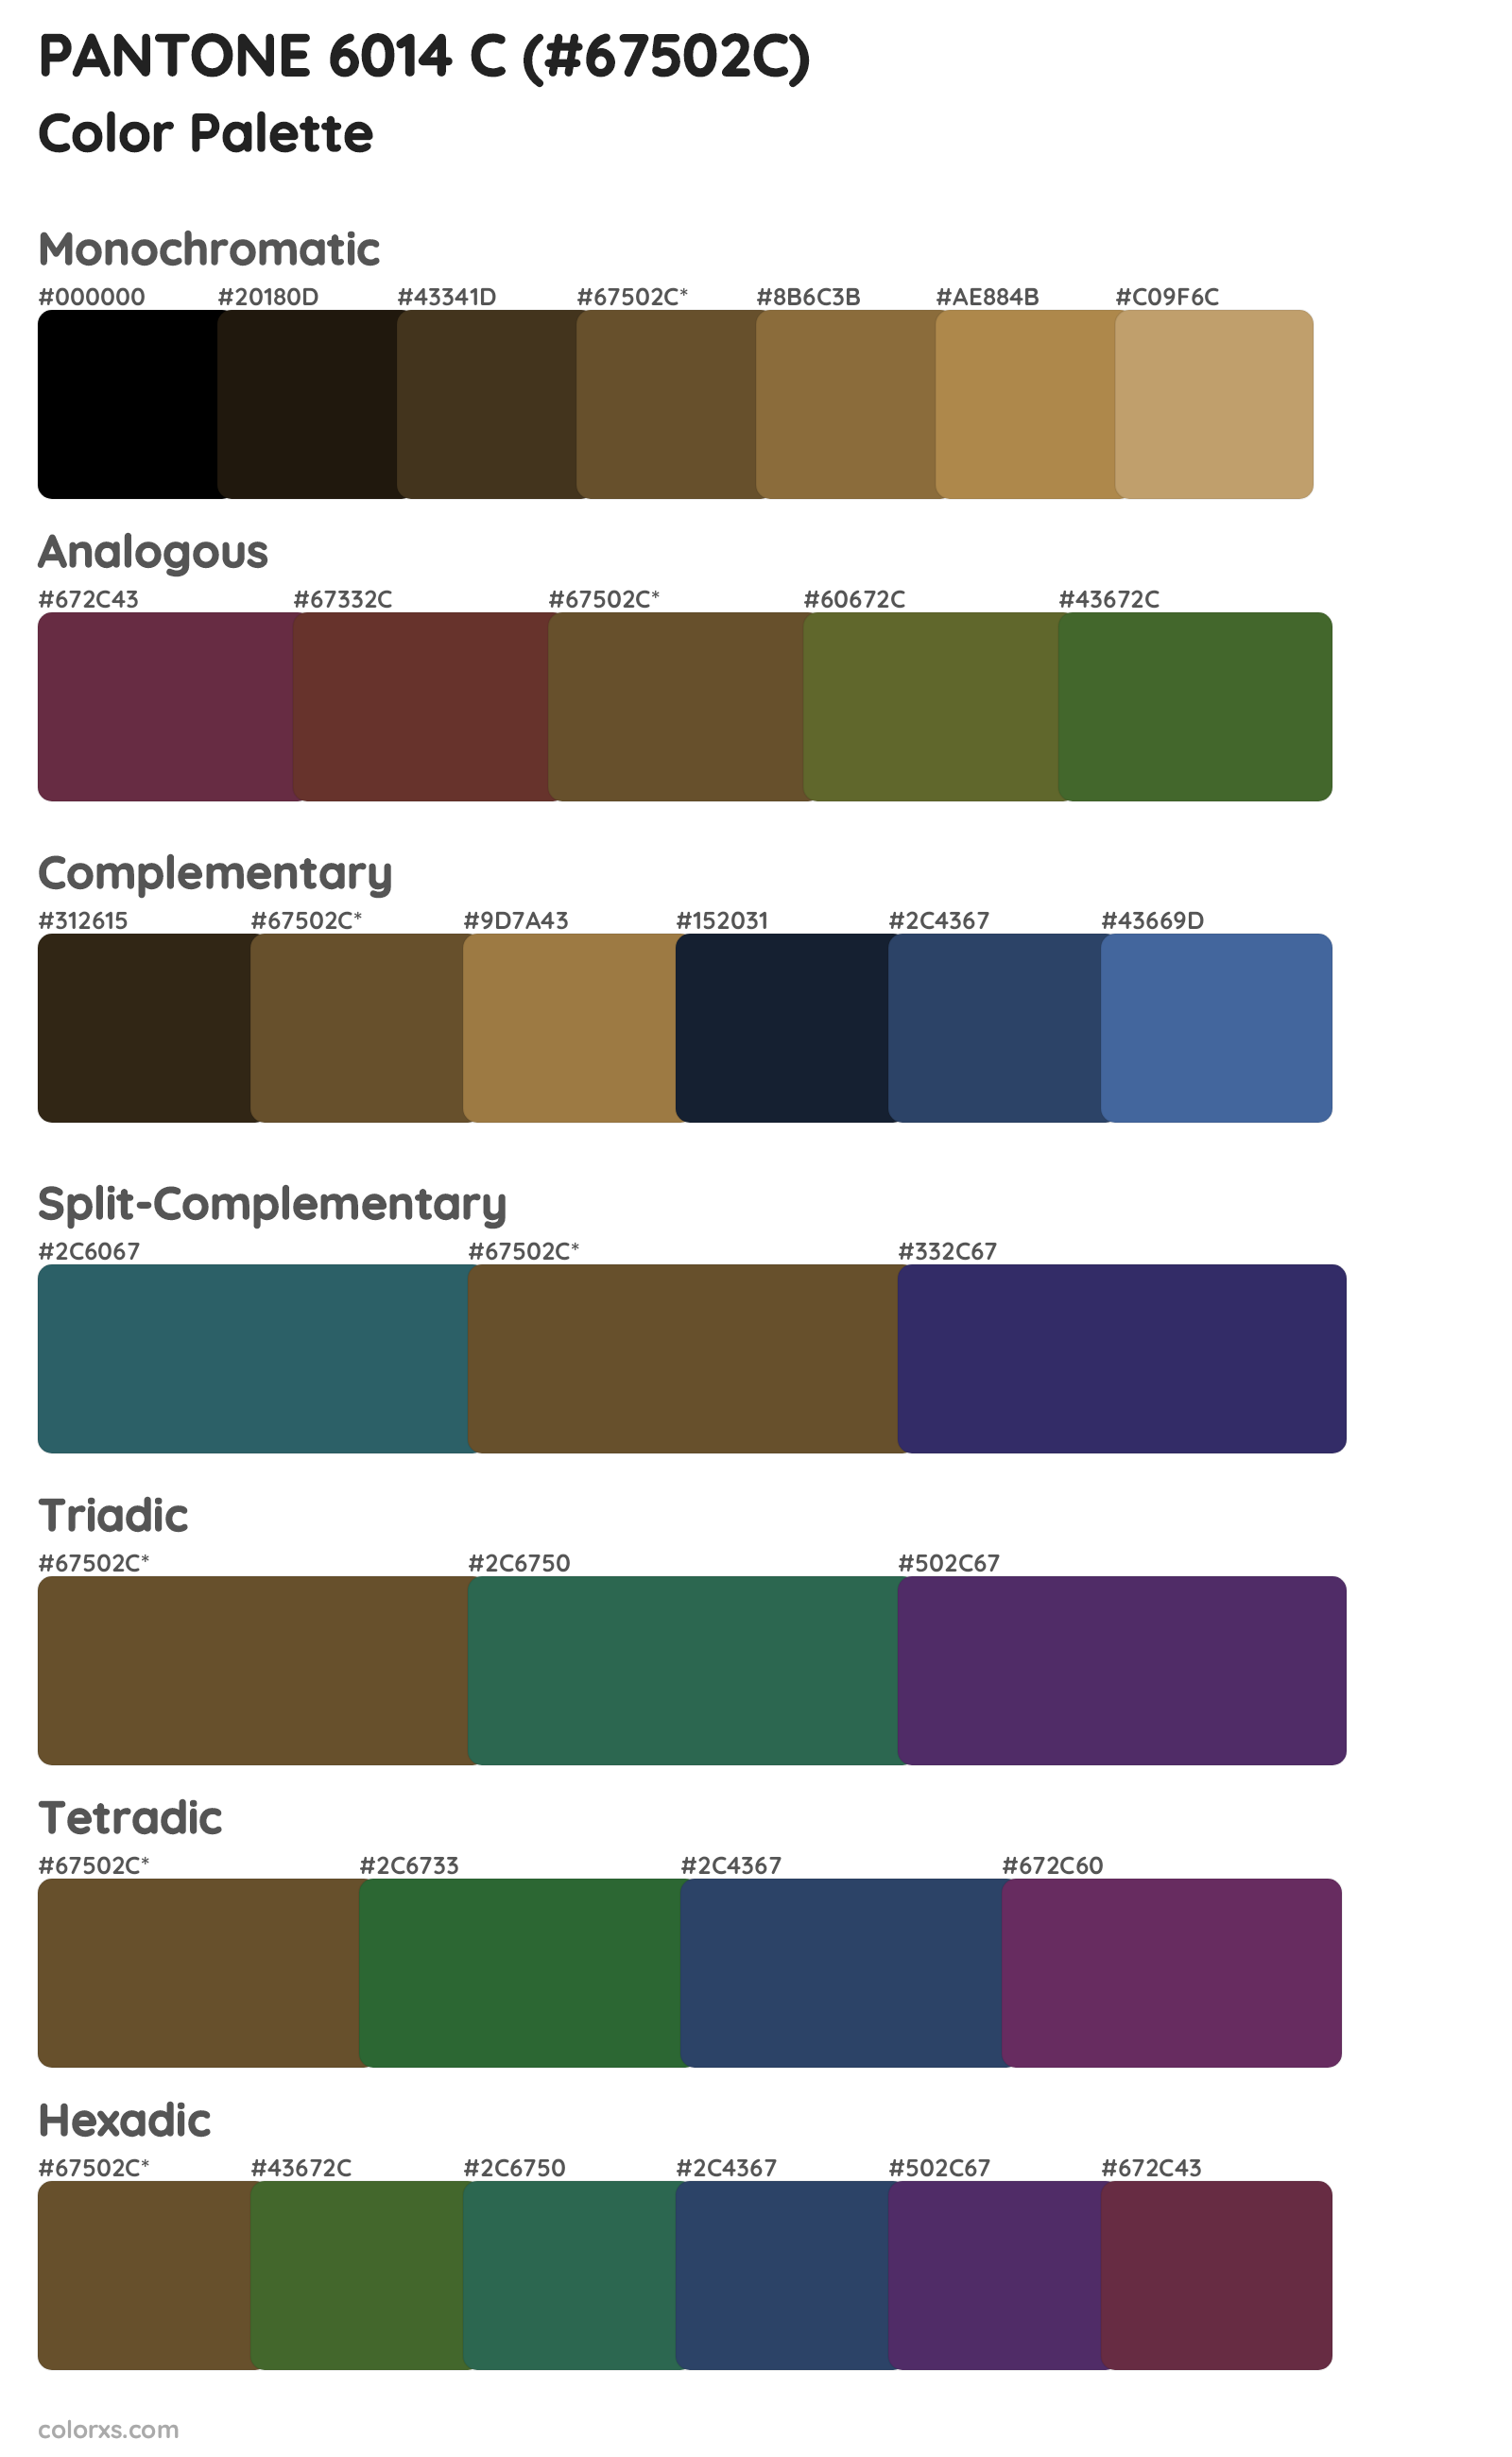 PANTONE 6014 C Color Scheme Palettes